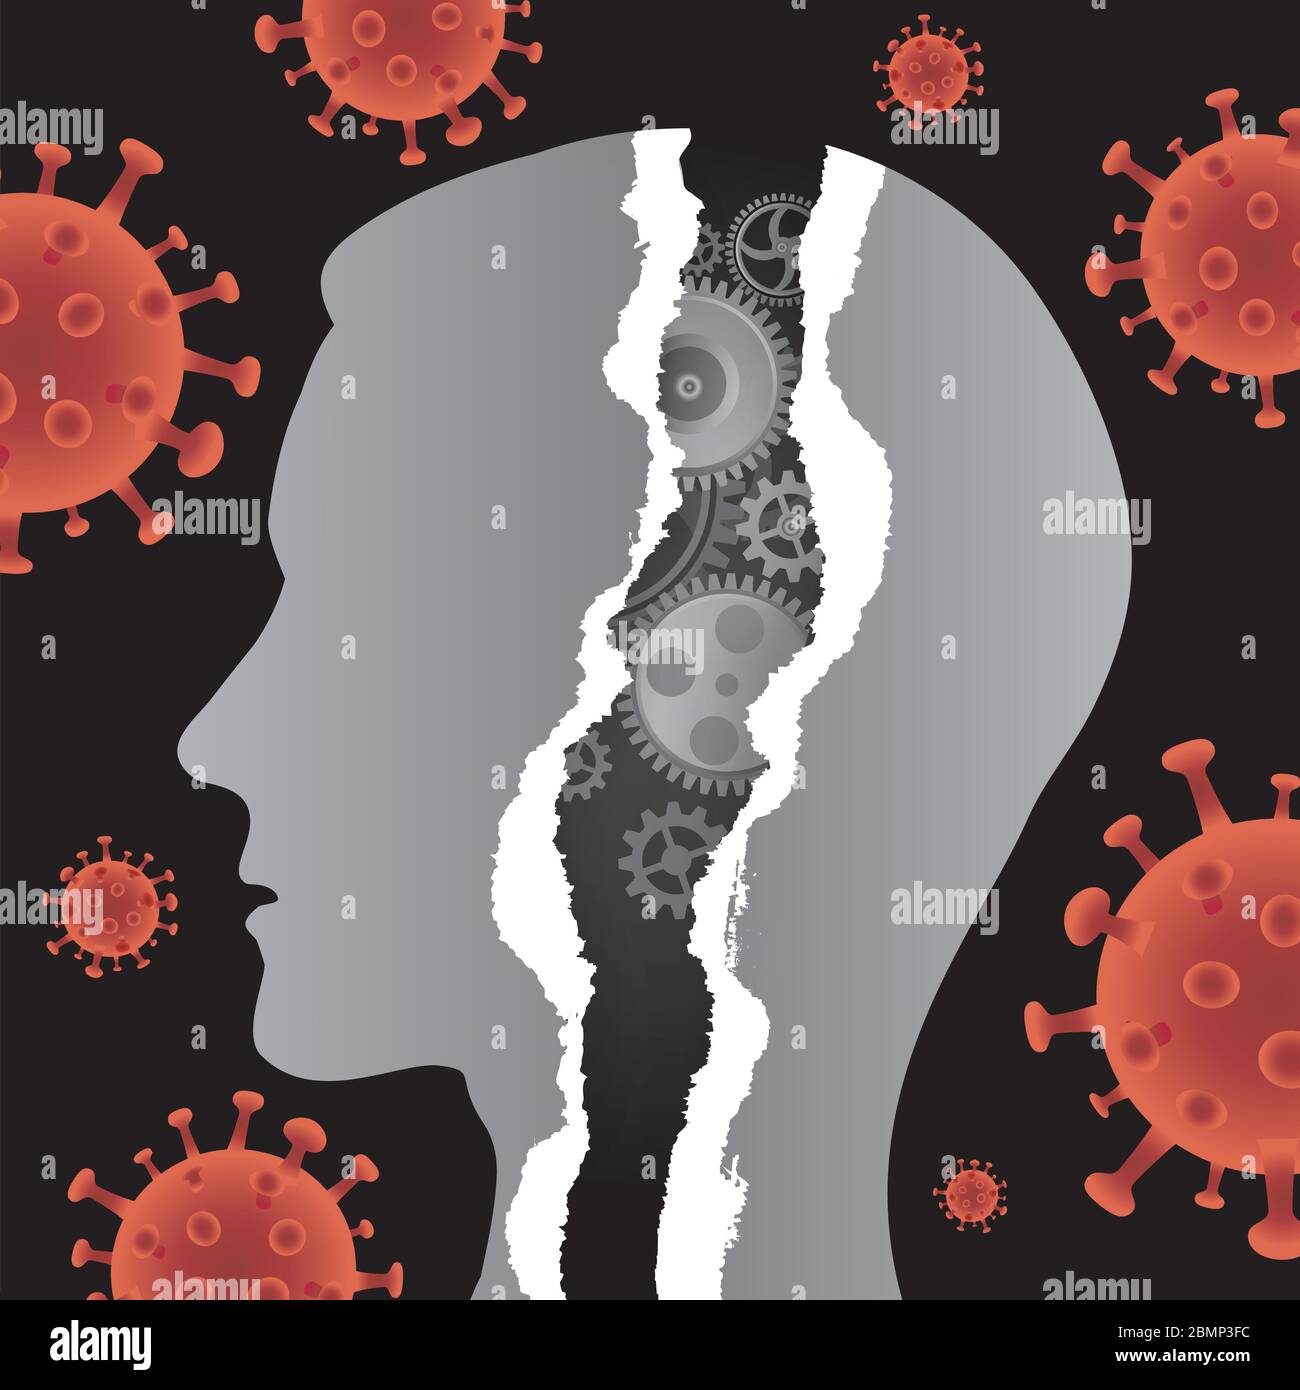 Stress da depressione dell'uomo, salute mentale durante la pandemia del coronavirus. Immagine della carta strappata con la testa maschio nel profilo con ingranaggio e sfondo nero. Illustrazione Vettoriale